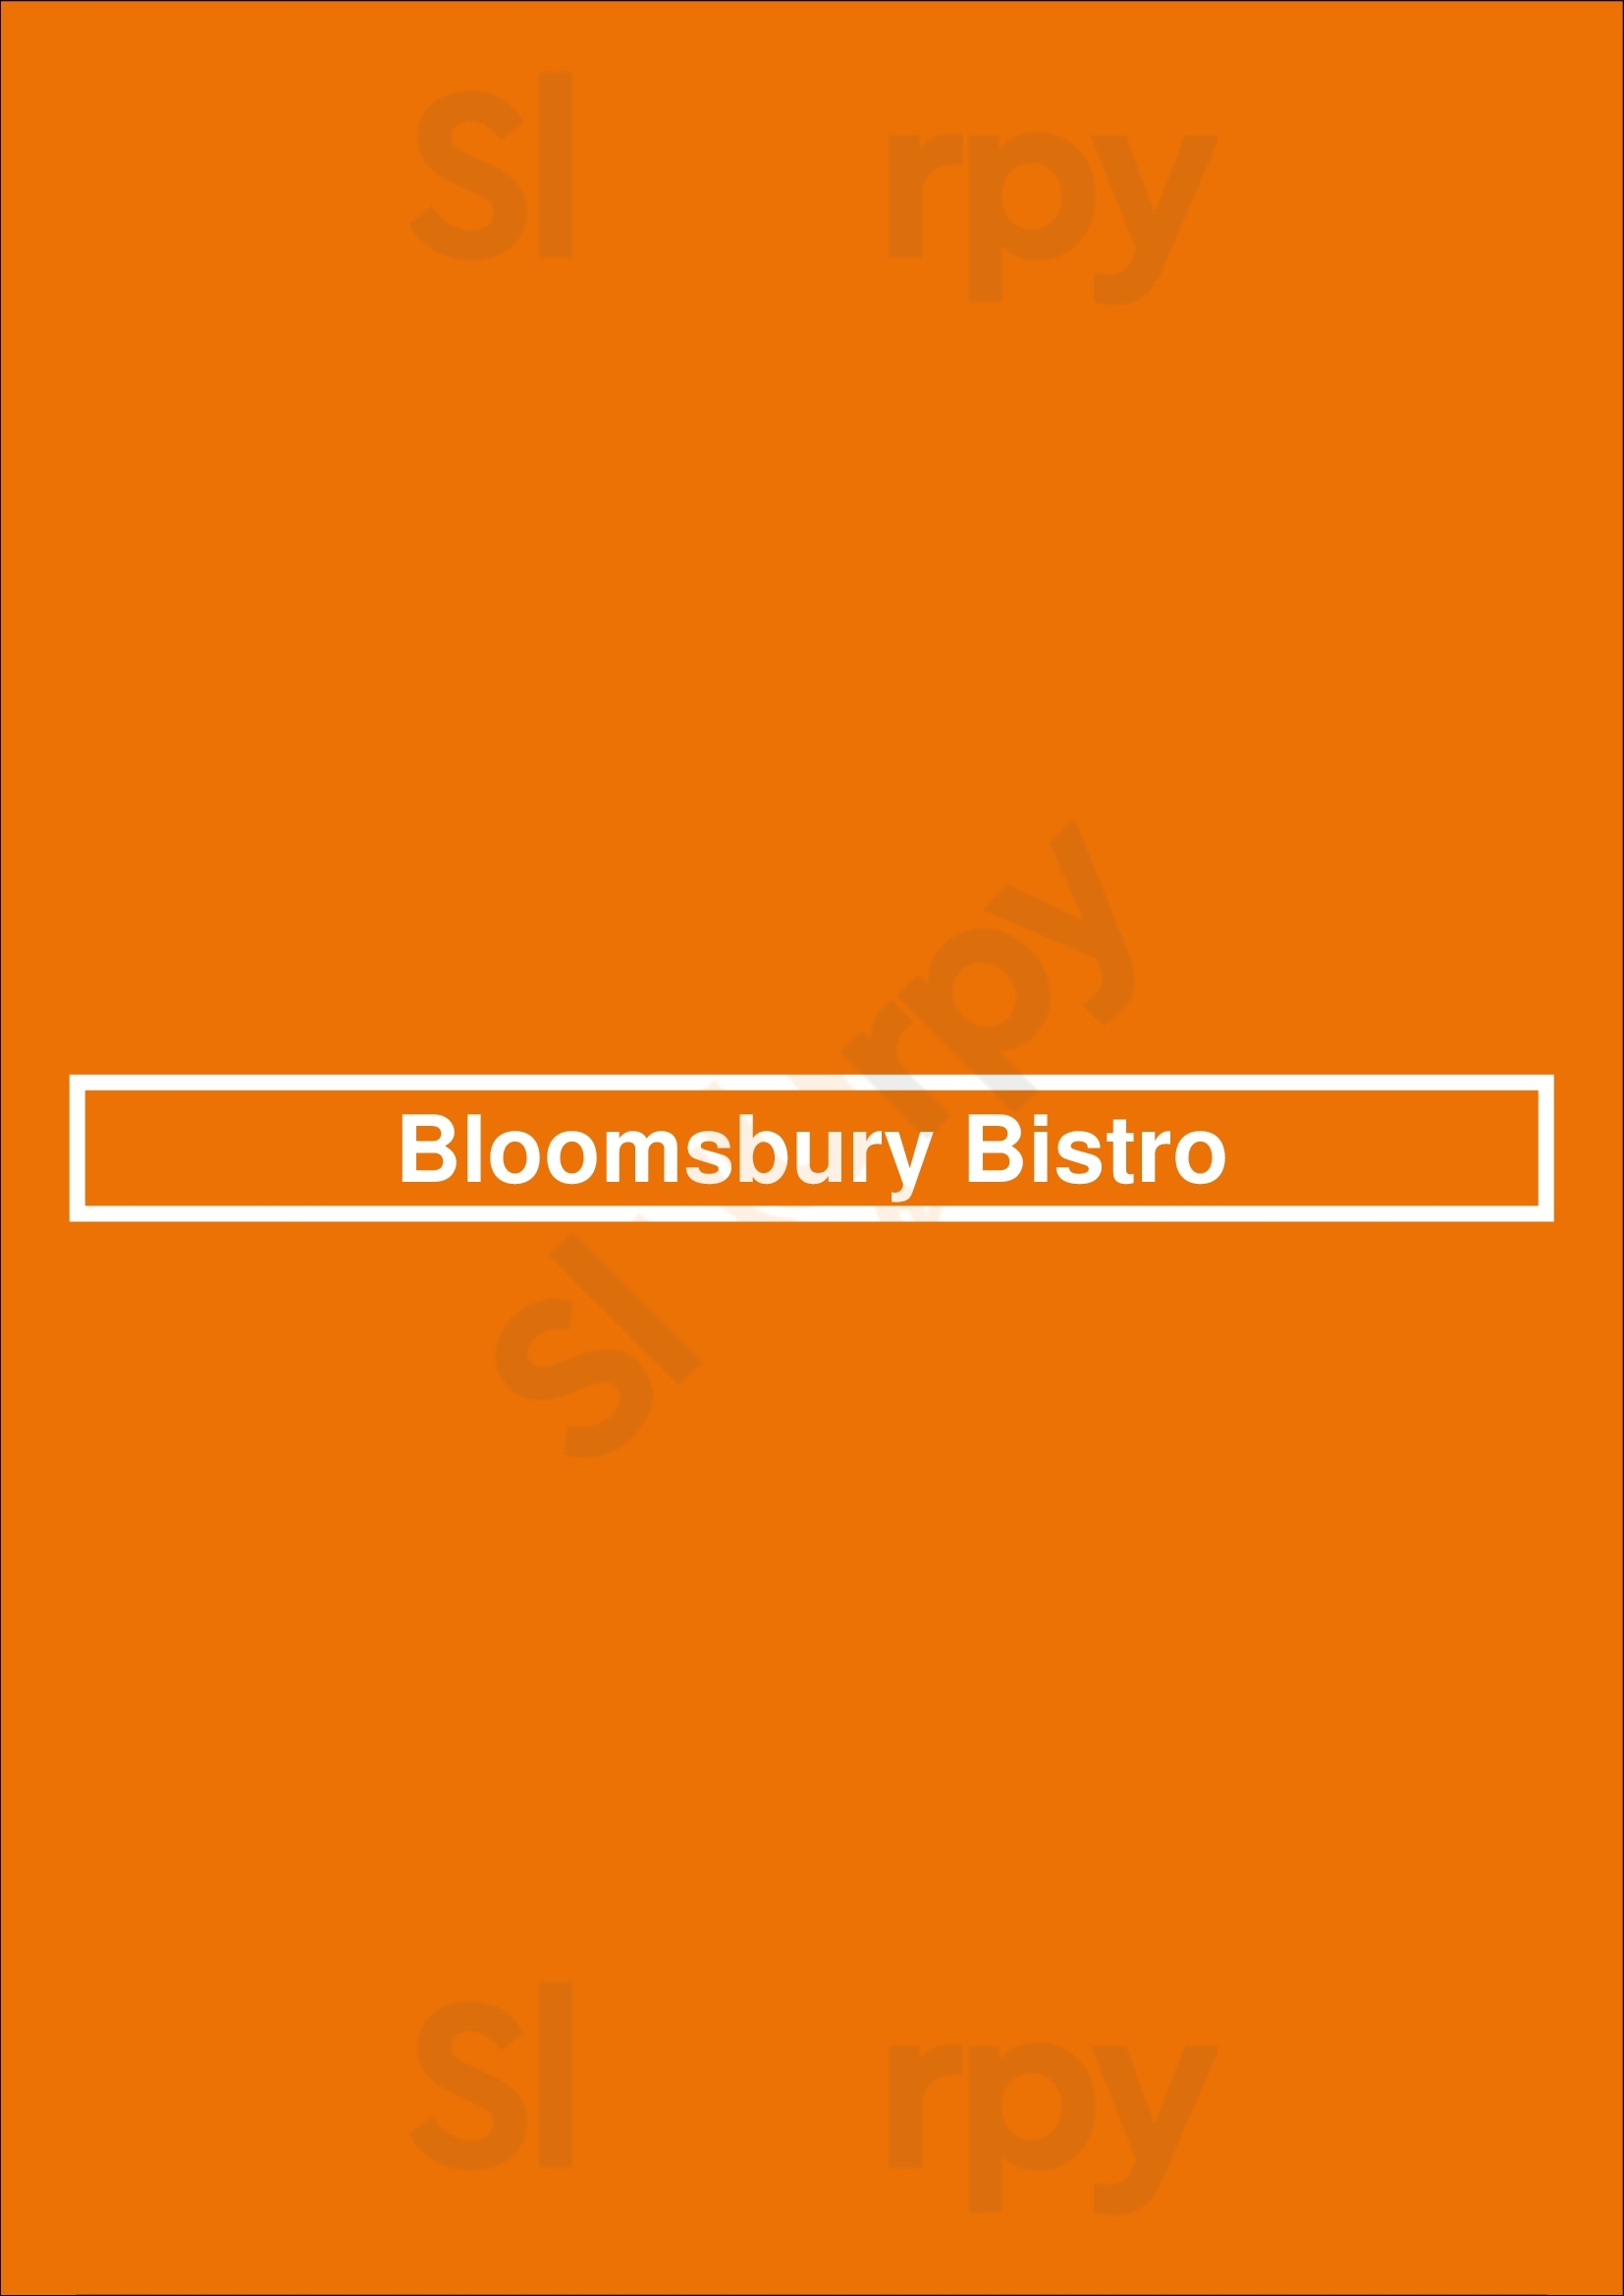 Bloomsbury Bistro Raleigh Menu - 1